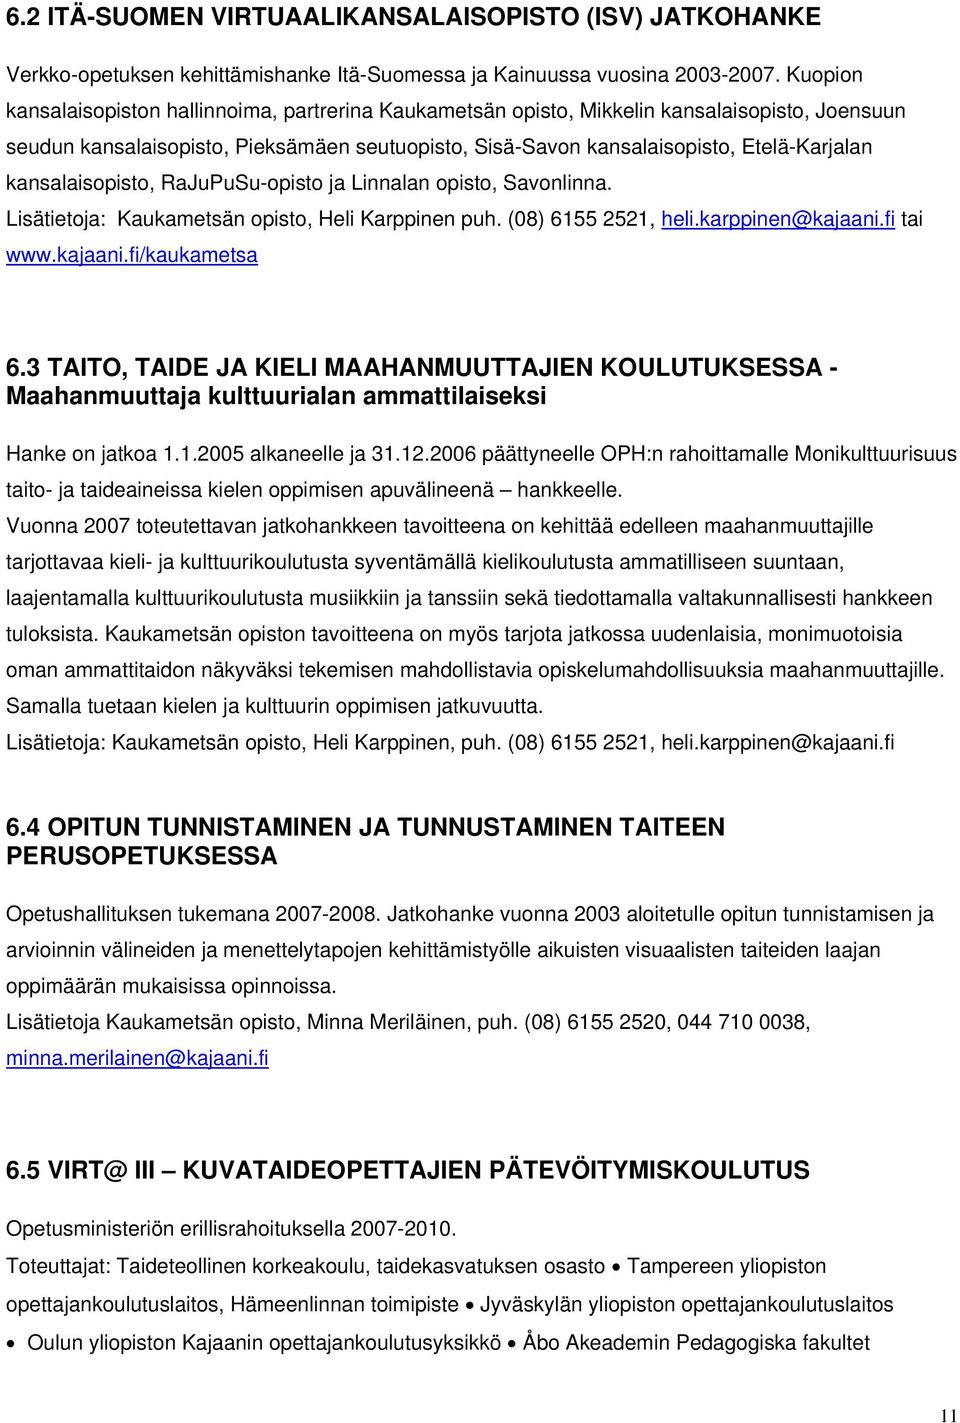 kansalaisopisto, RaJuPuSu-opisto ja Linnalan opisto, Savonlinna. Lisätietoja: Kaukametsän opisto, Heli Karppinen puh. (08) 6155 2521, heli.karppinen@kajaani.fi tai www.kajaani.fi/kaukametsa 6.